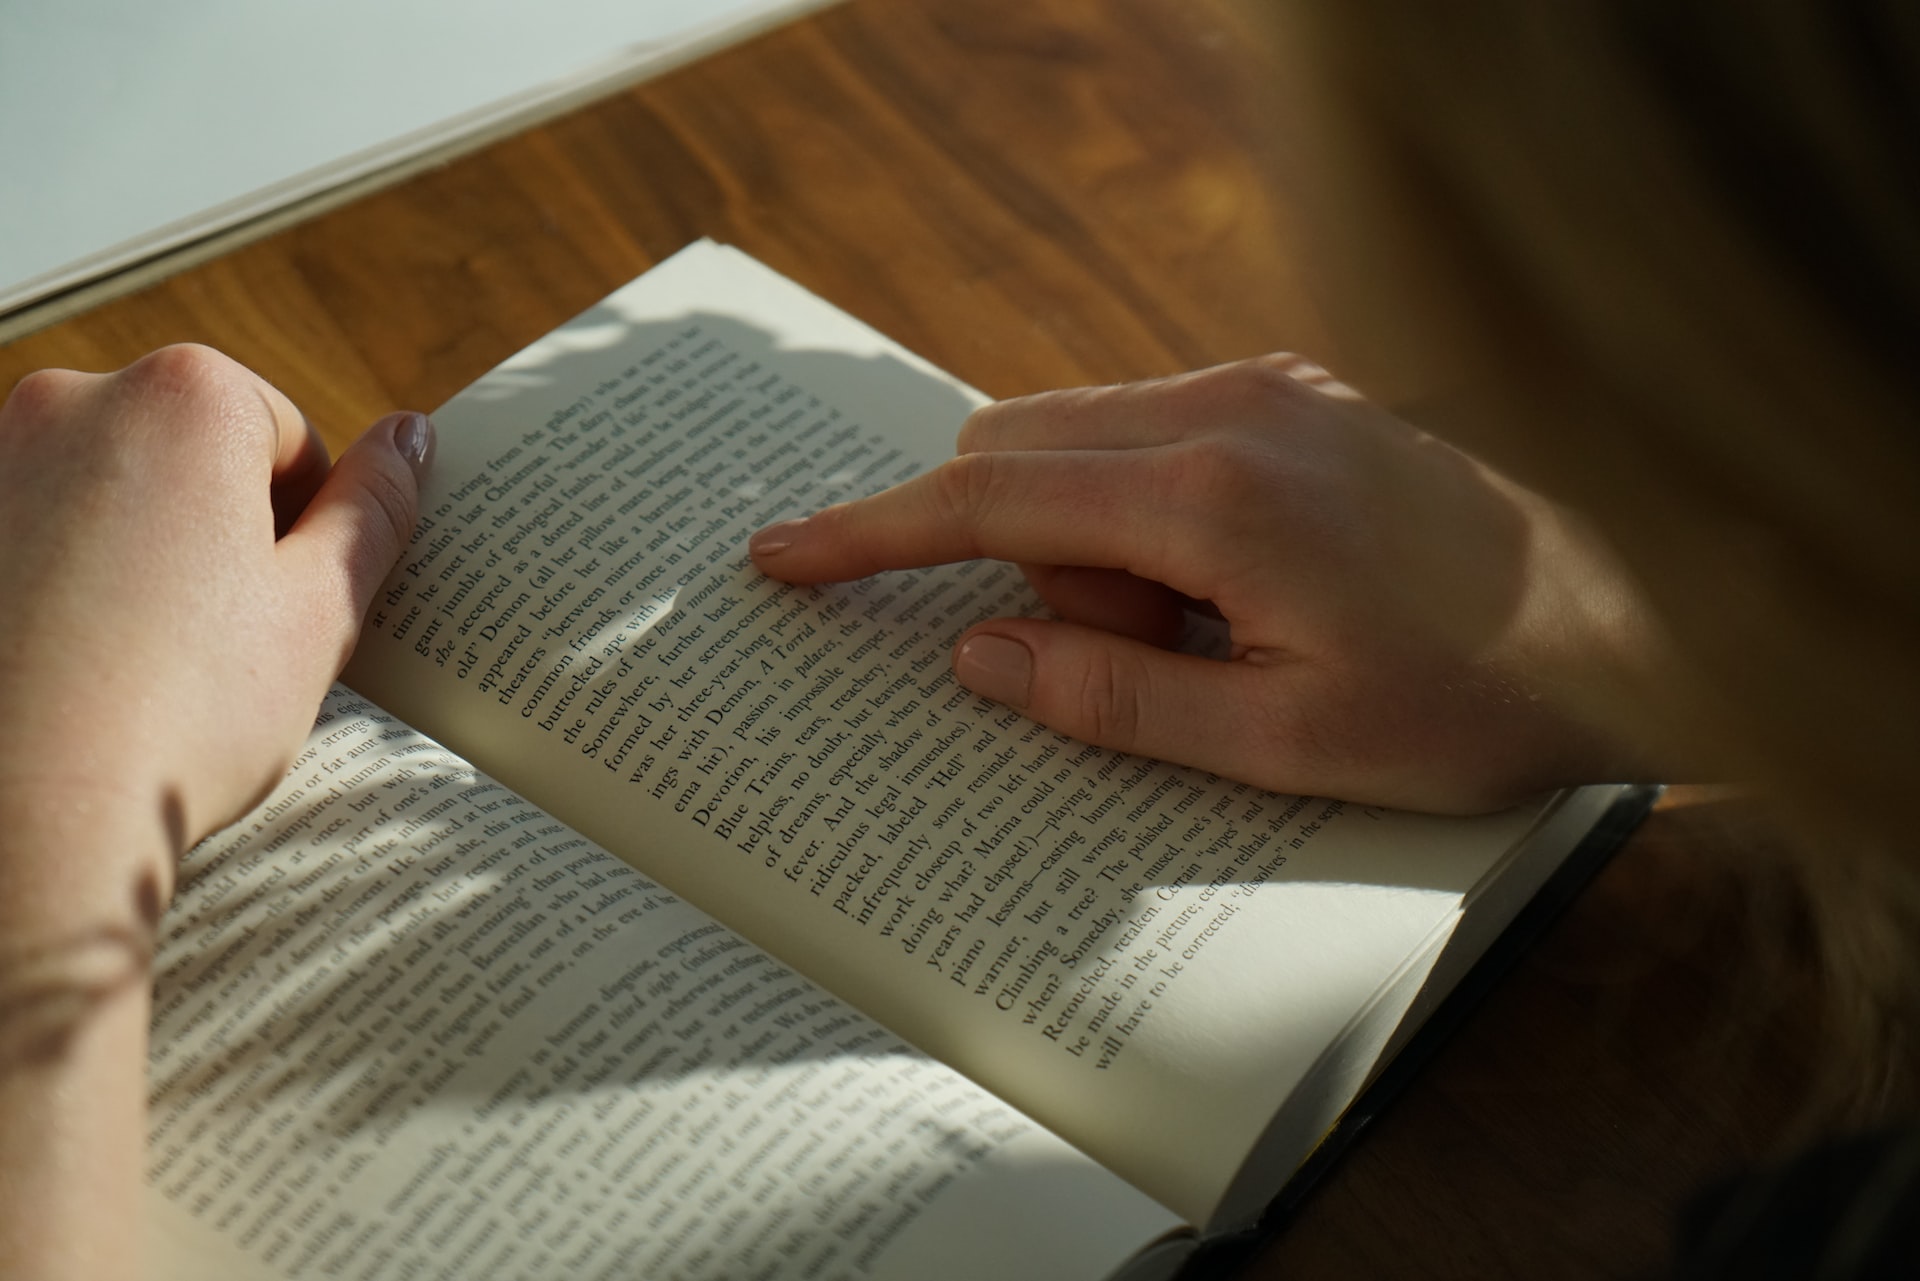 Ζήσε περισσότερο διαβάζοντας βιβλία- Τα οφέλη της ανάγνωσης στον εγκέφαλο και στην ψυχική υγεία